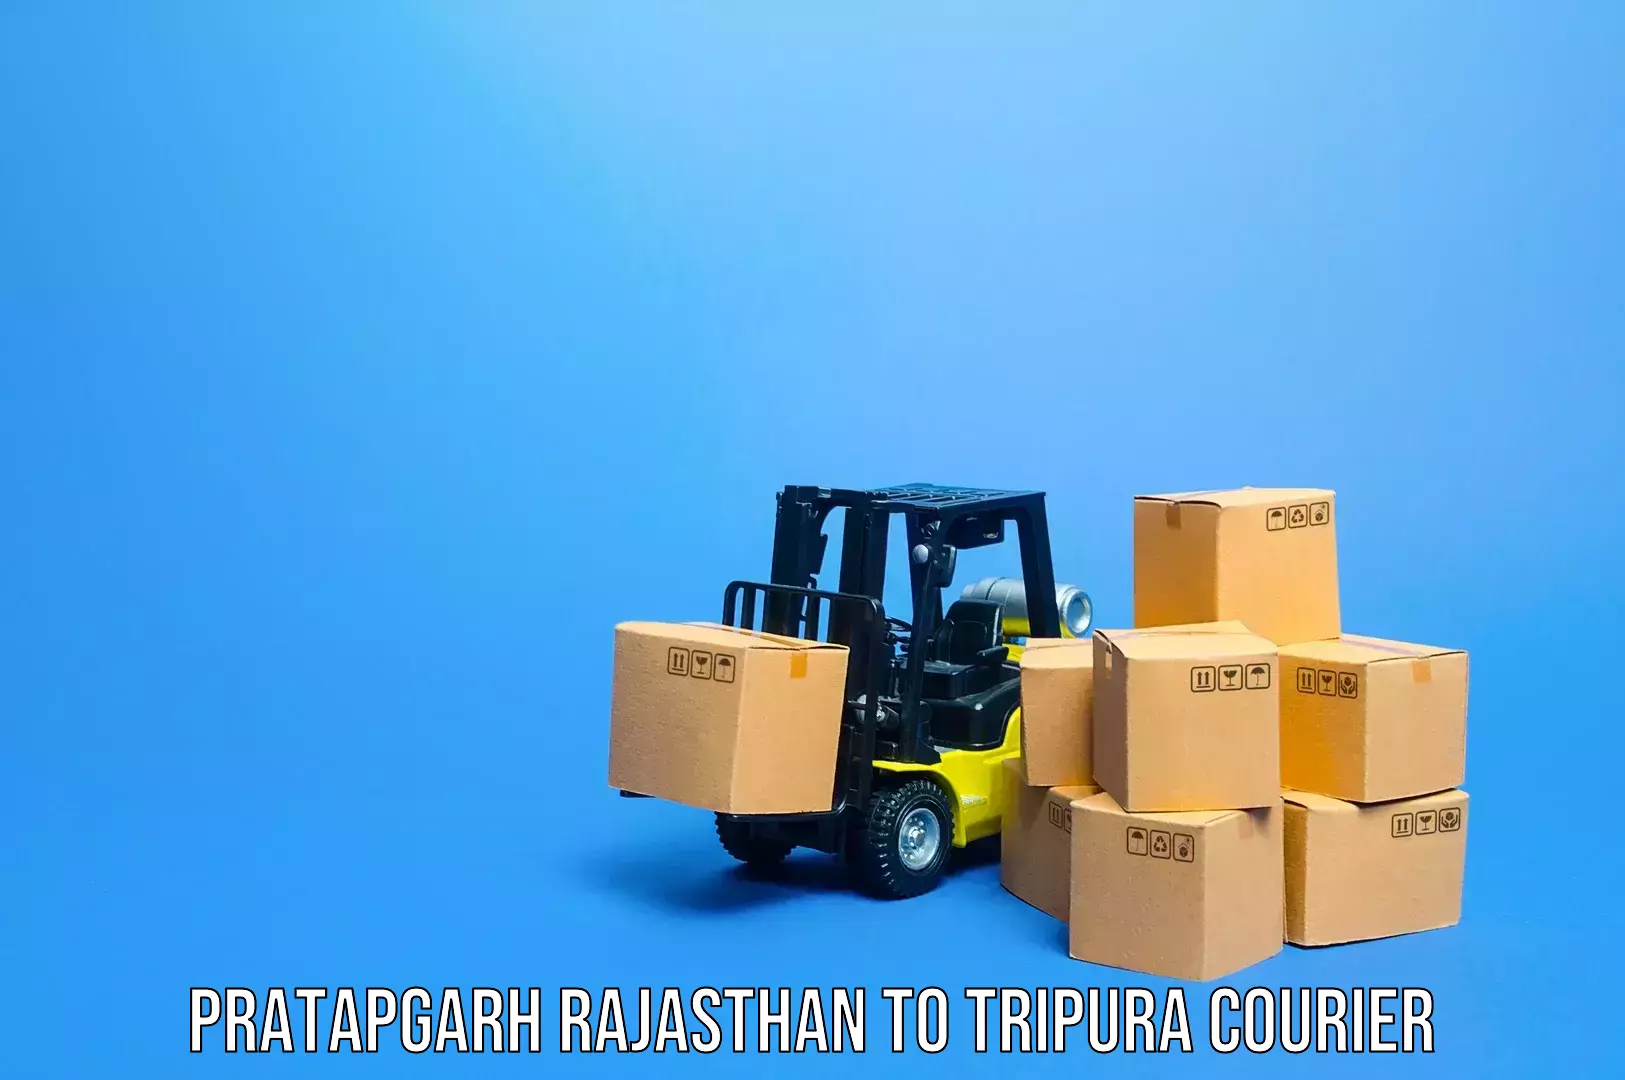 Tailored baggage transport Pratapgarh Rajasthan to Udaipur Tripura